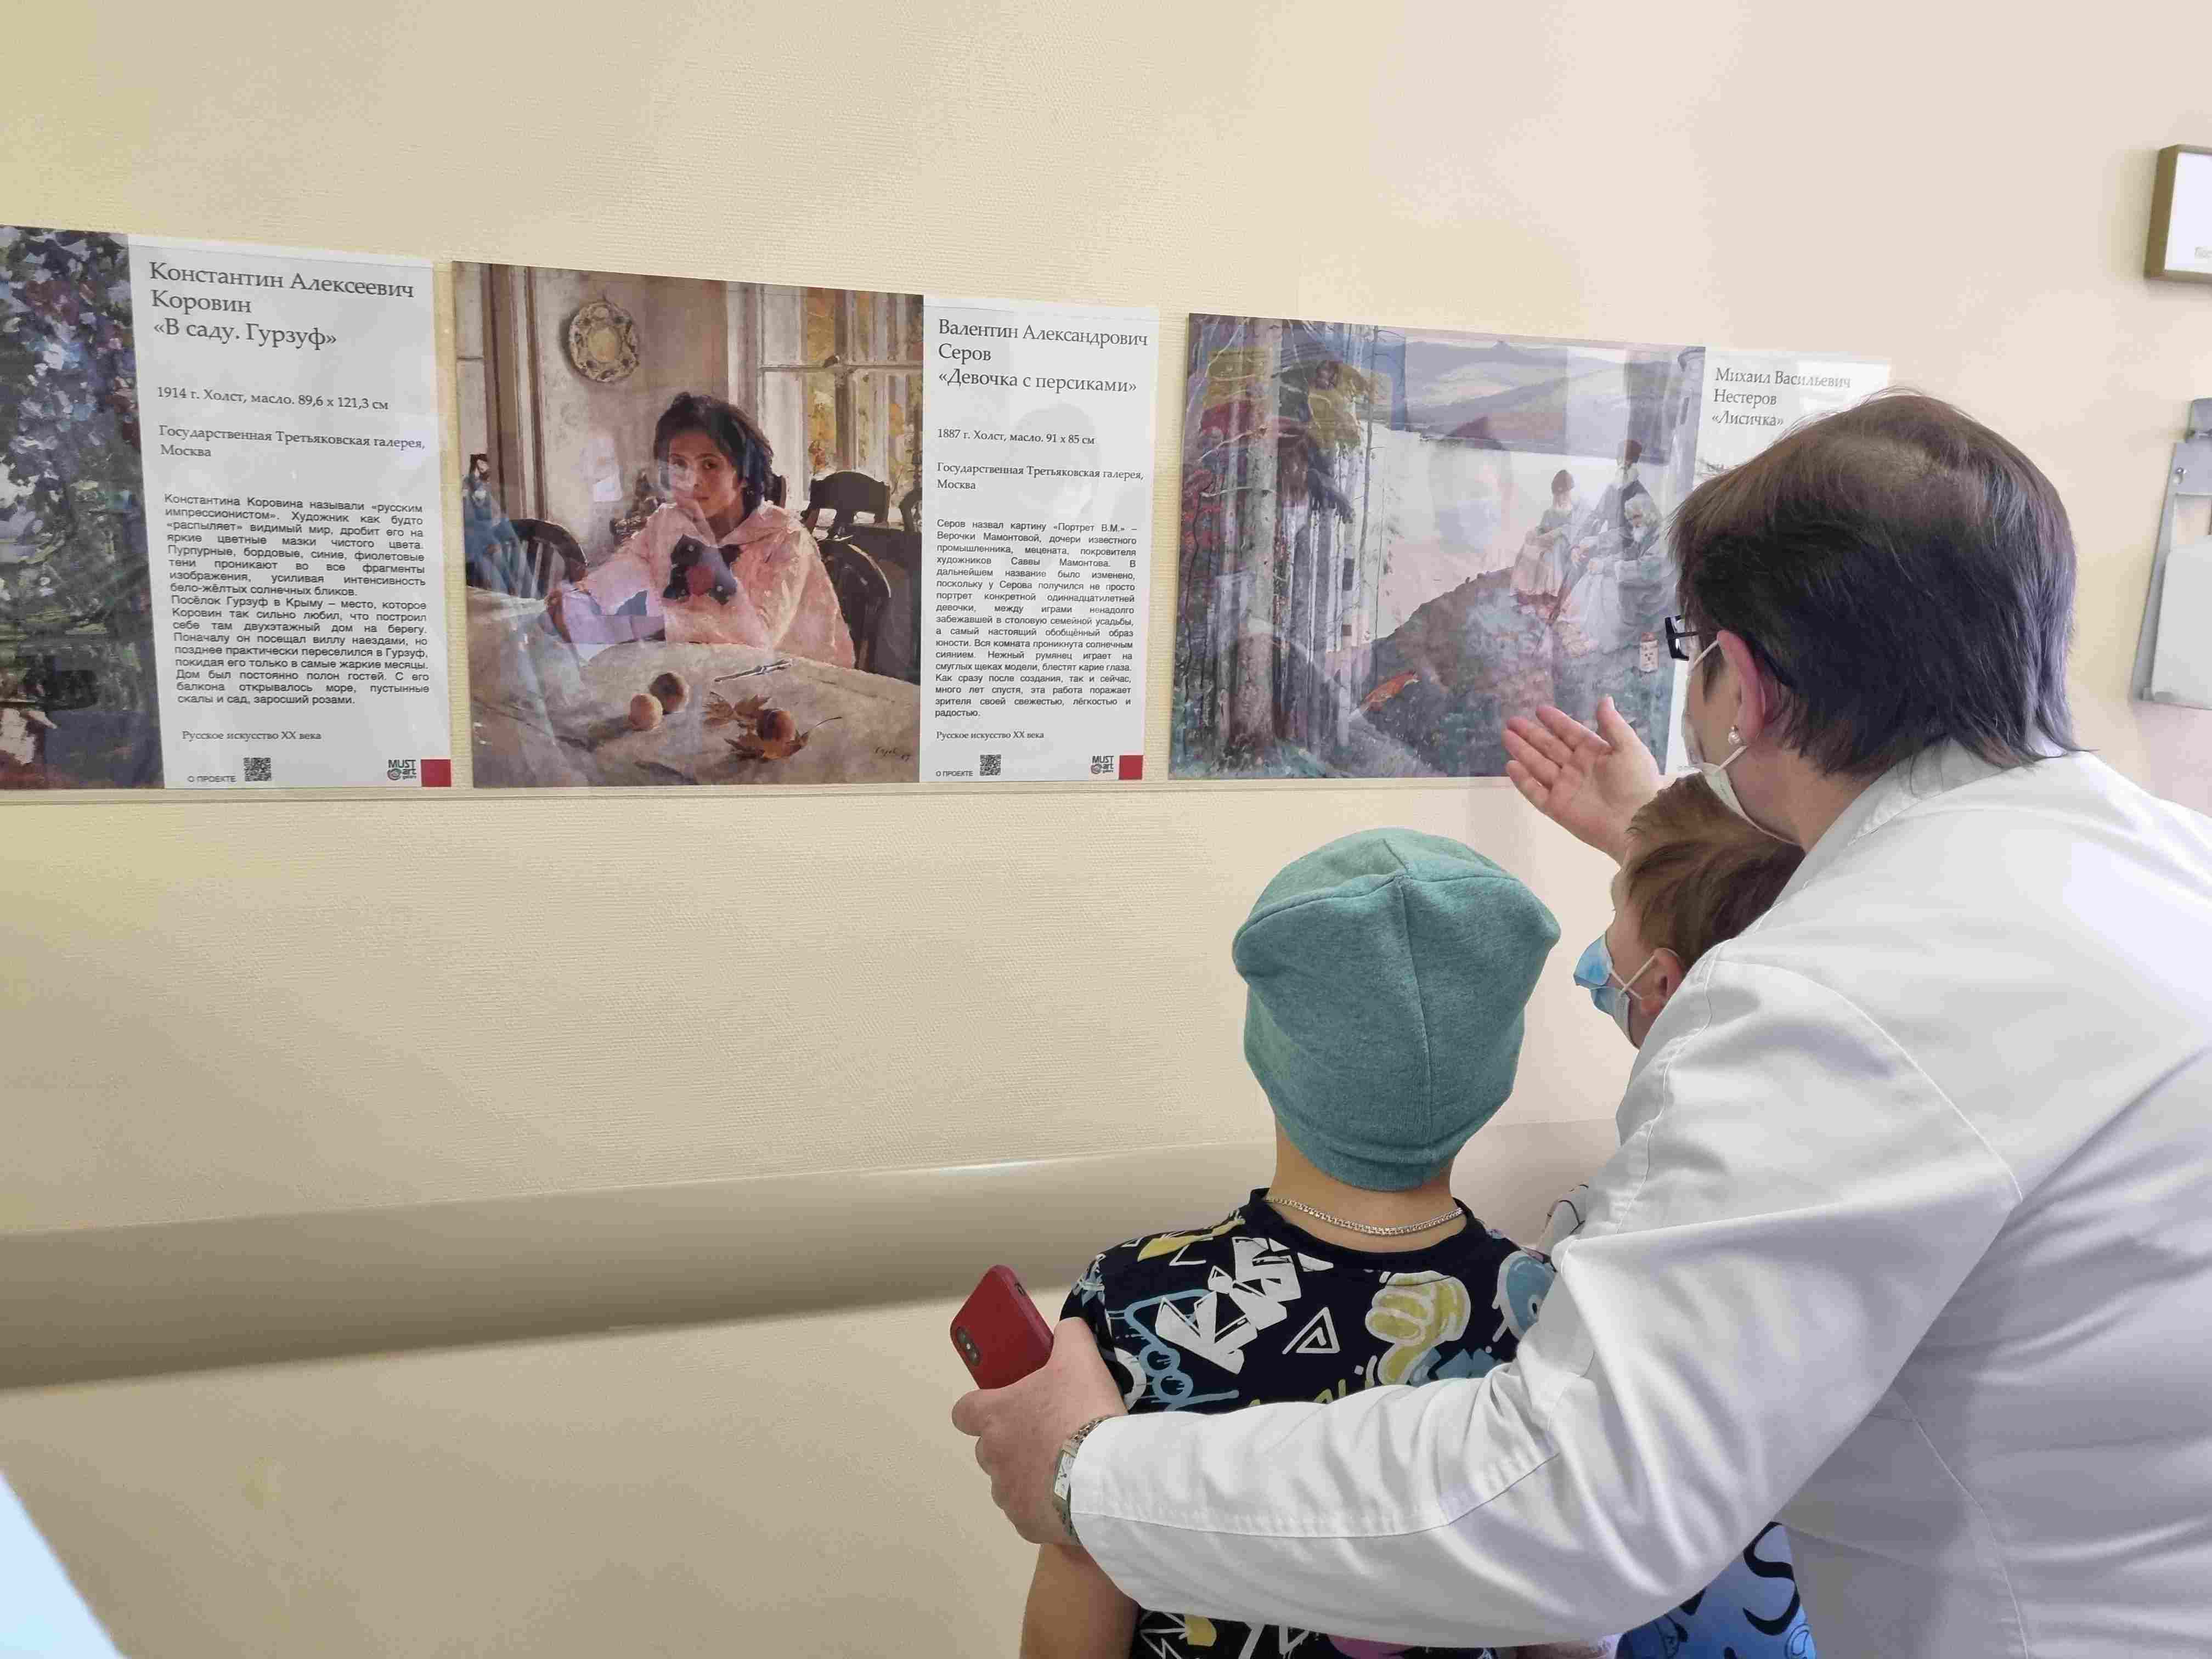 Картинная галерея открылась в
Центре детской онкологии и гематологии